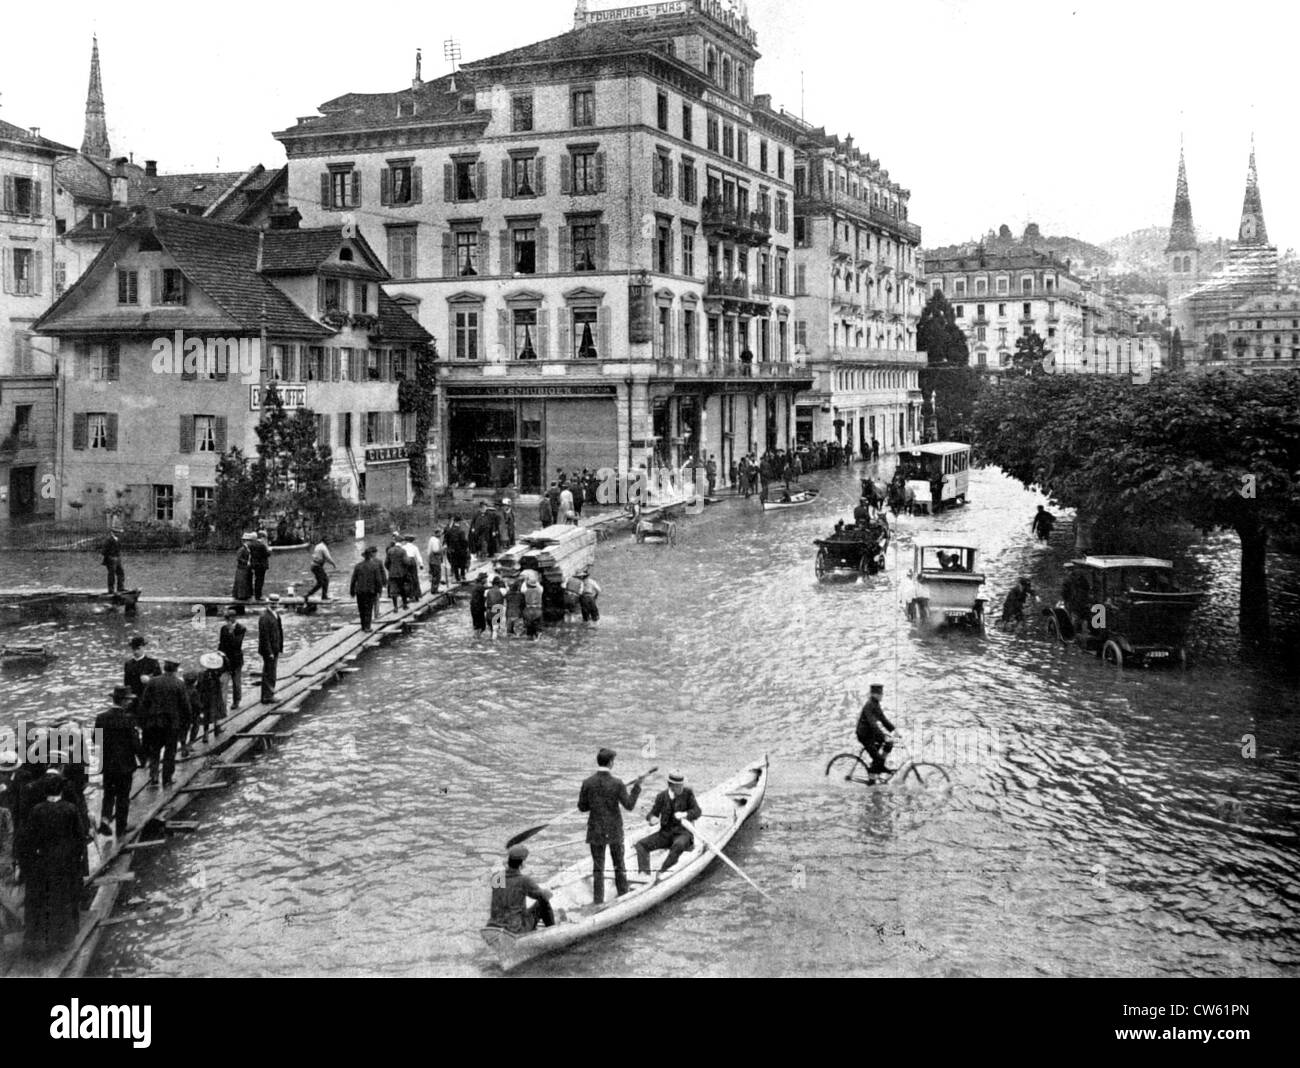 La città svizzera di Lucerna, inondati dopo piogge torrenziali (1910) Foto Stock